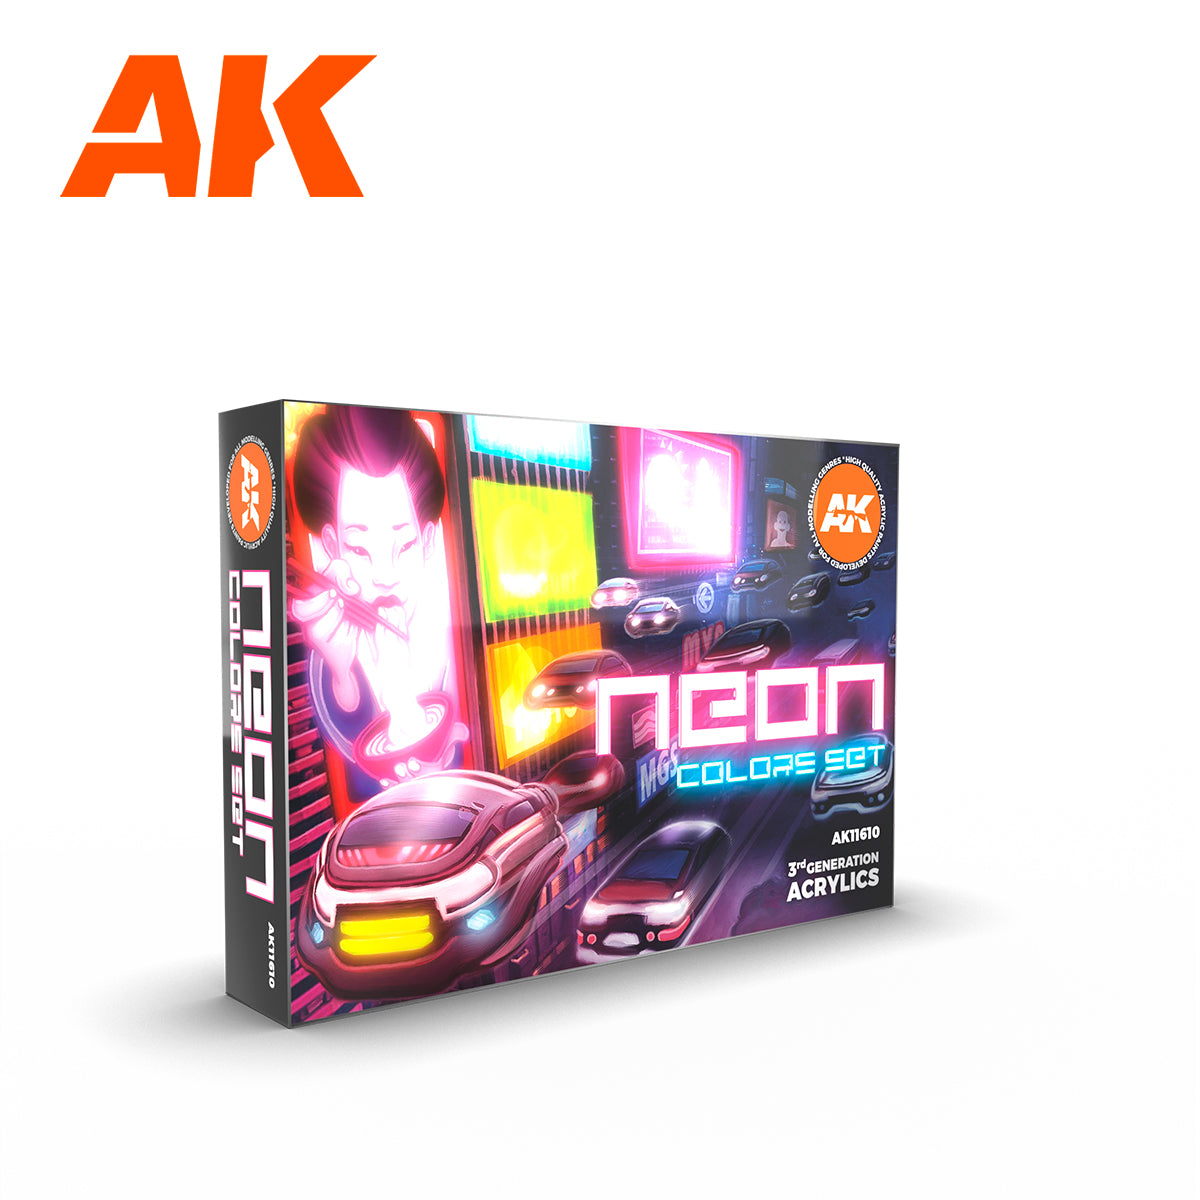 AK11610: Neon Paint Set